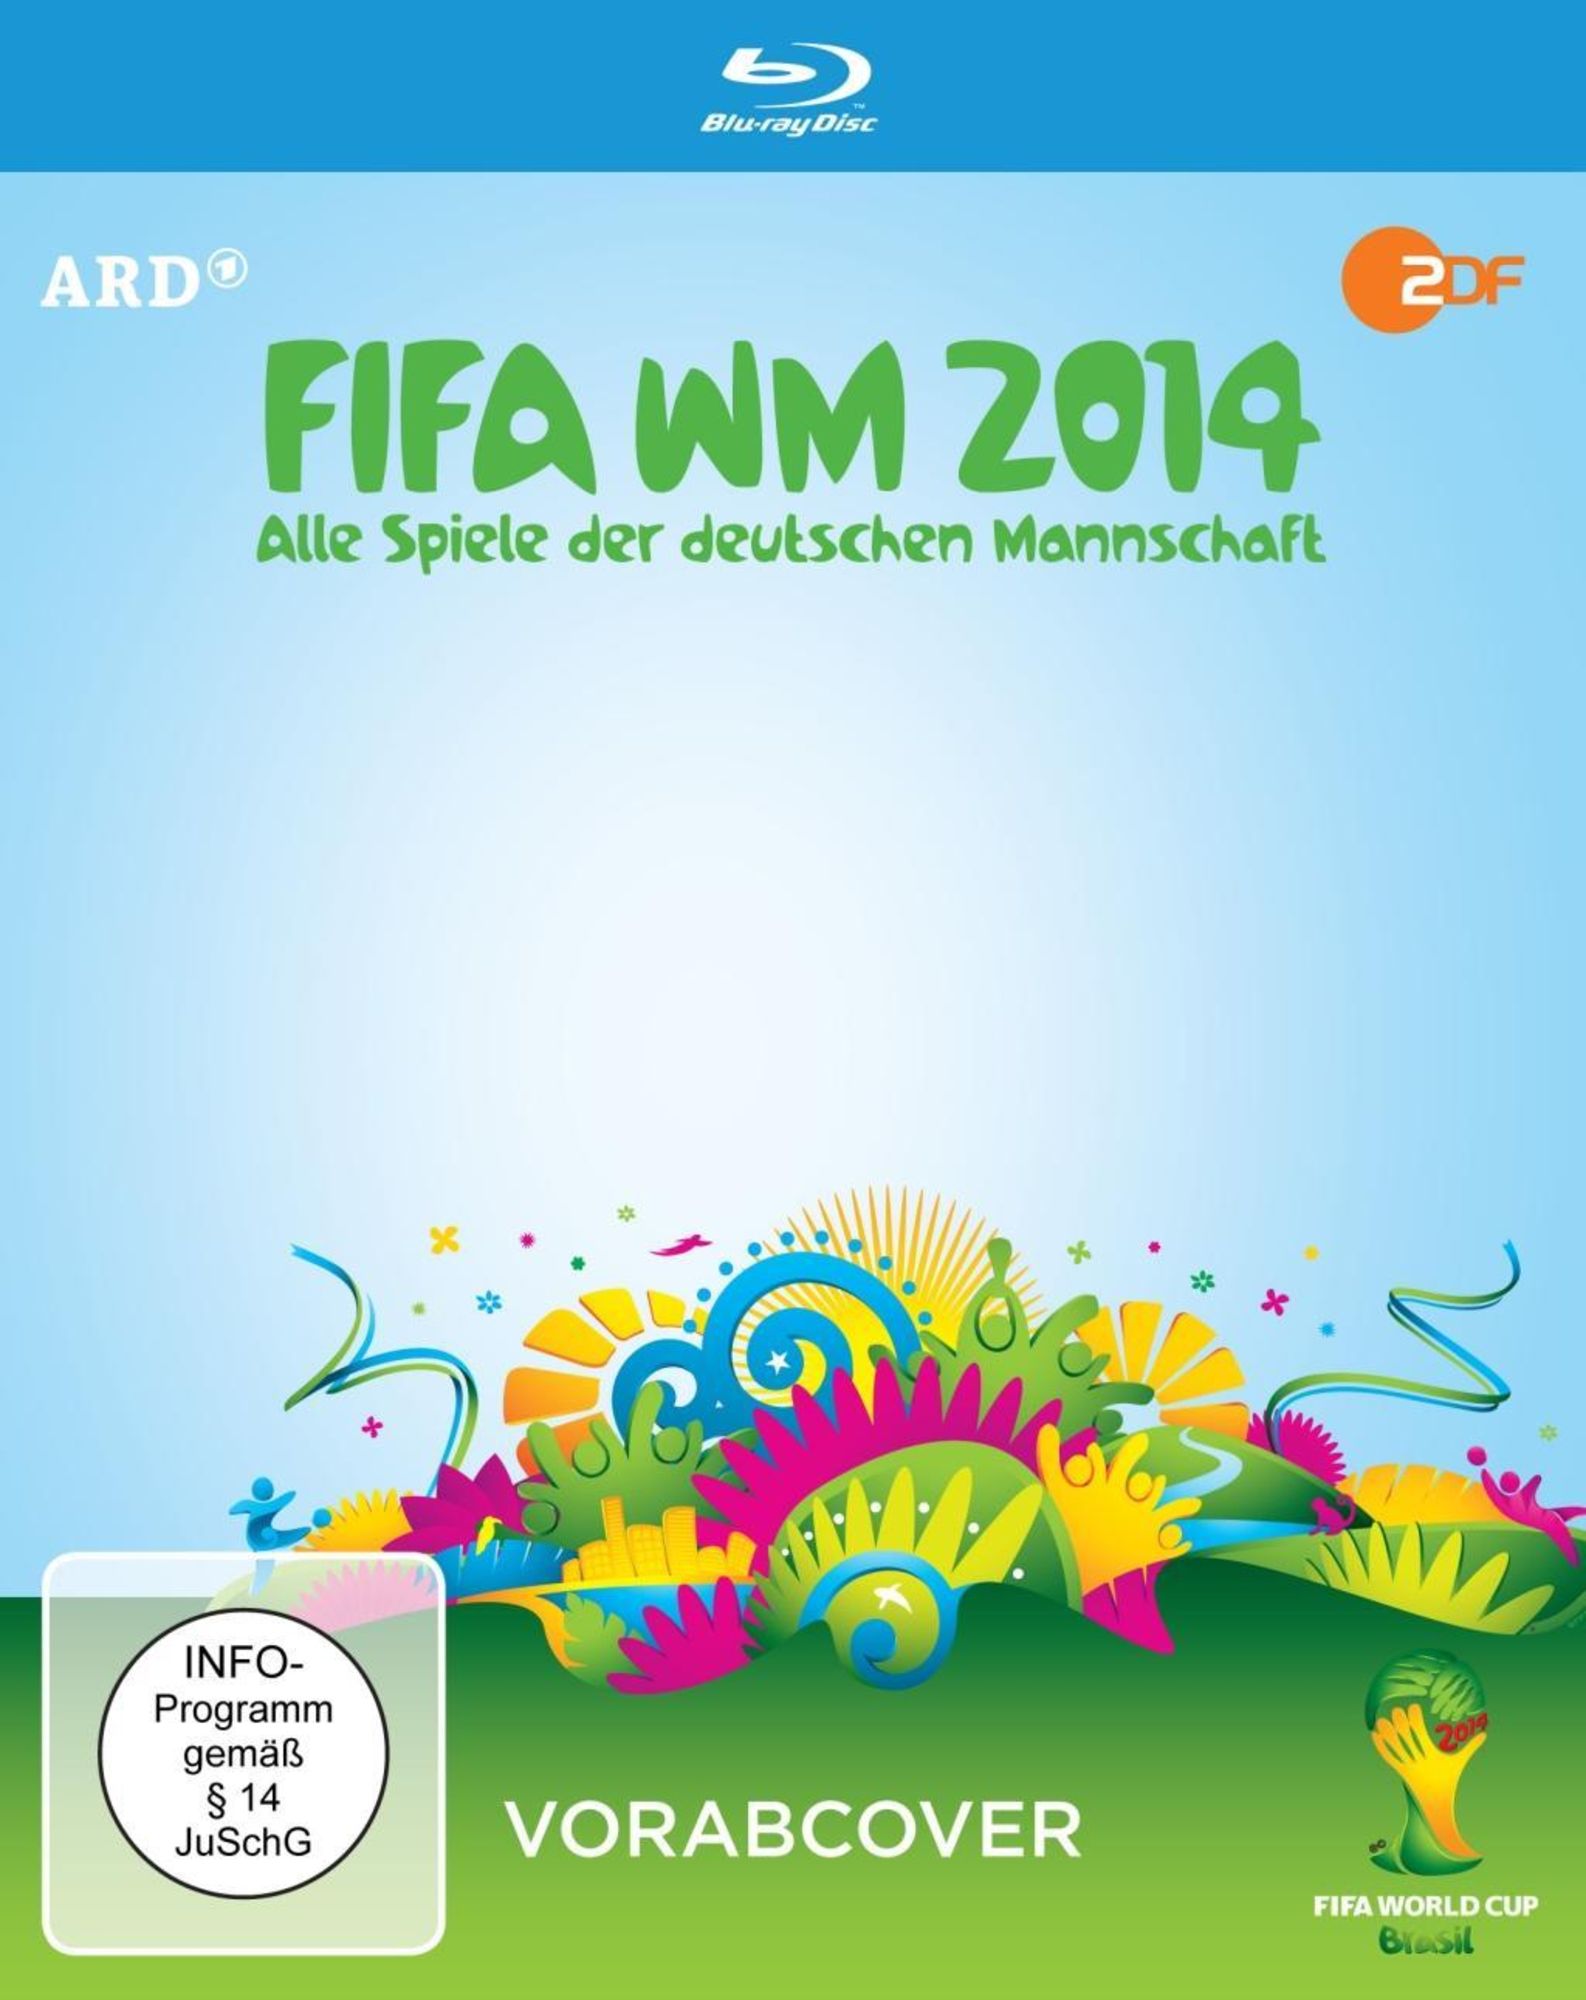 FIFA WM 2014 - Alle Spiele der deutschen Mannschaft 4 BRs von Karsten Linke